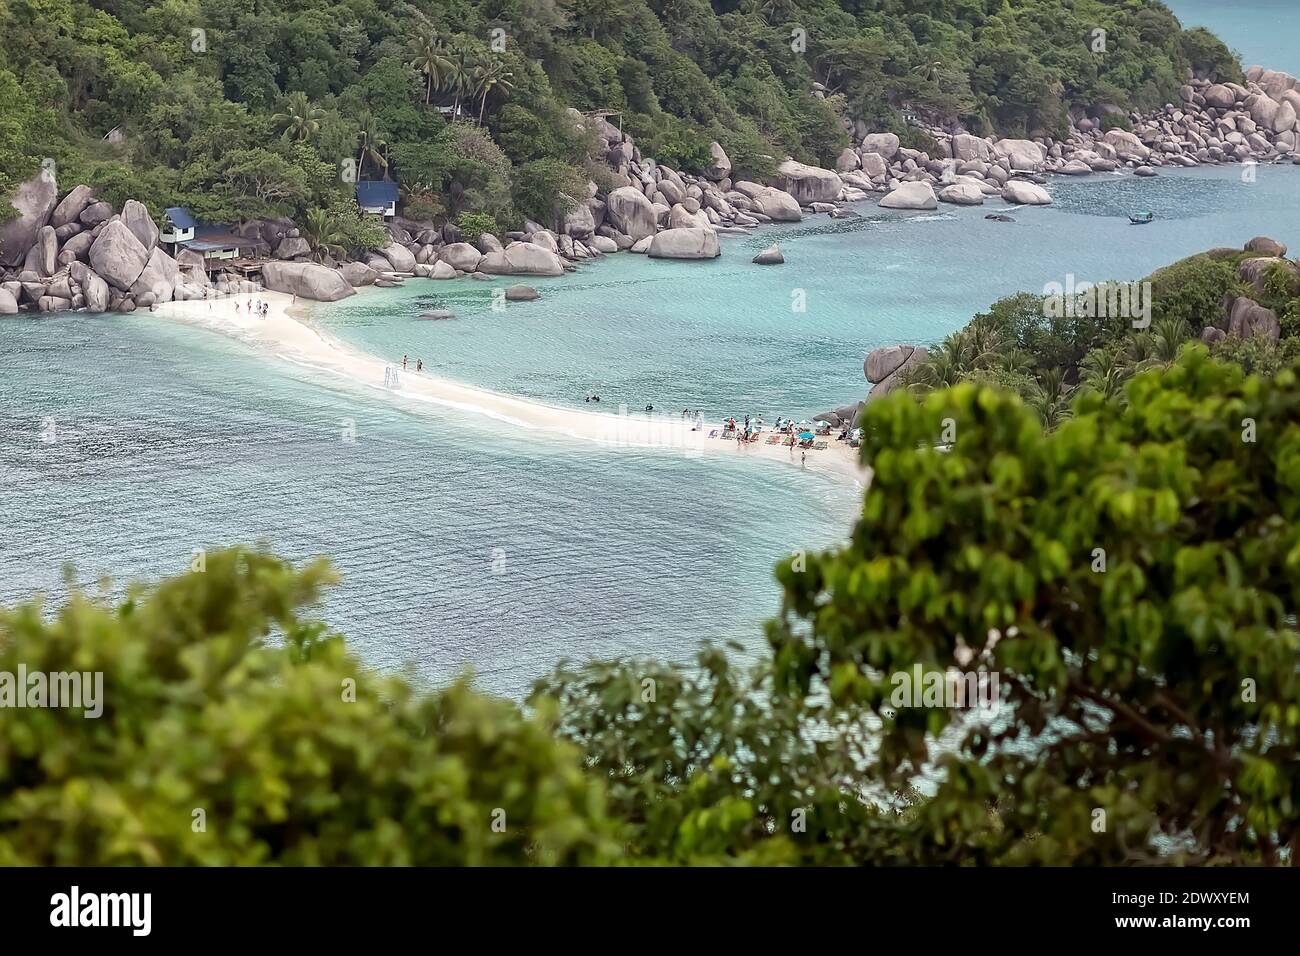 Ko Nang Yuan, Thaïlande, 02.19.2020. Belle île en Thaïlande. Une petite île tropicale avec une plage de sable blanc. La vue du dessus. Mer de l'île Banque D'Images